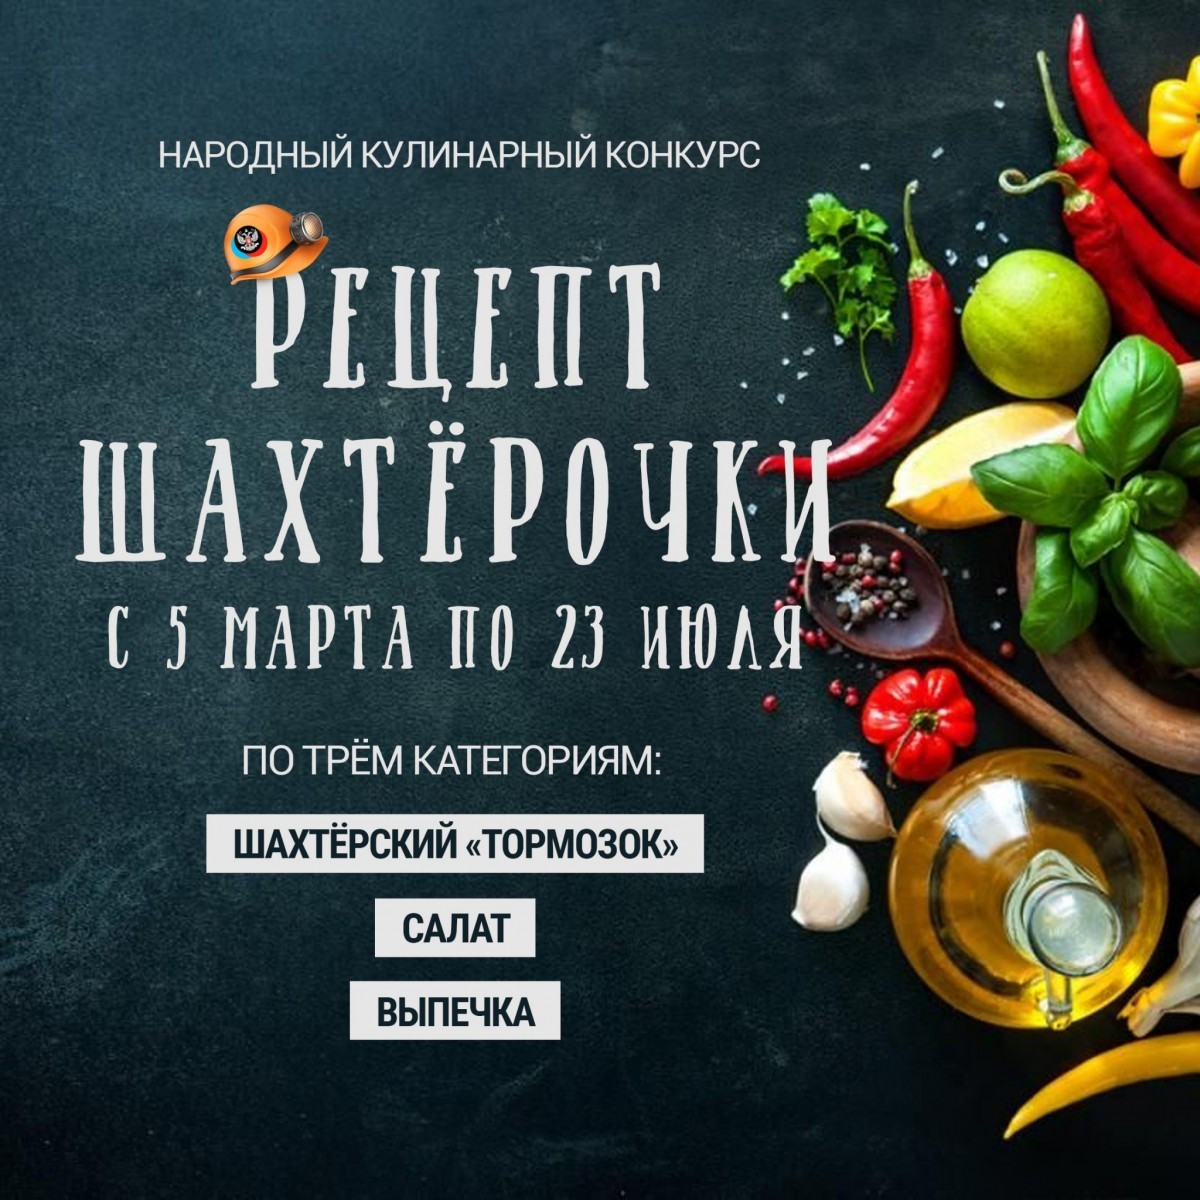 Народный кулинарный конкурс «Рецепт шахтёрочки»